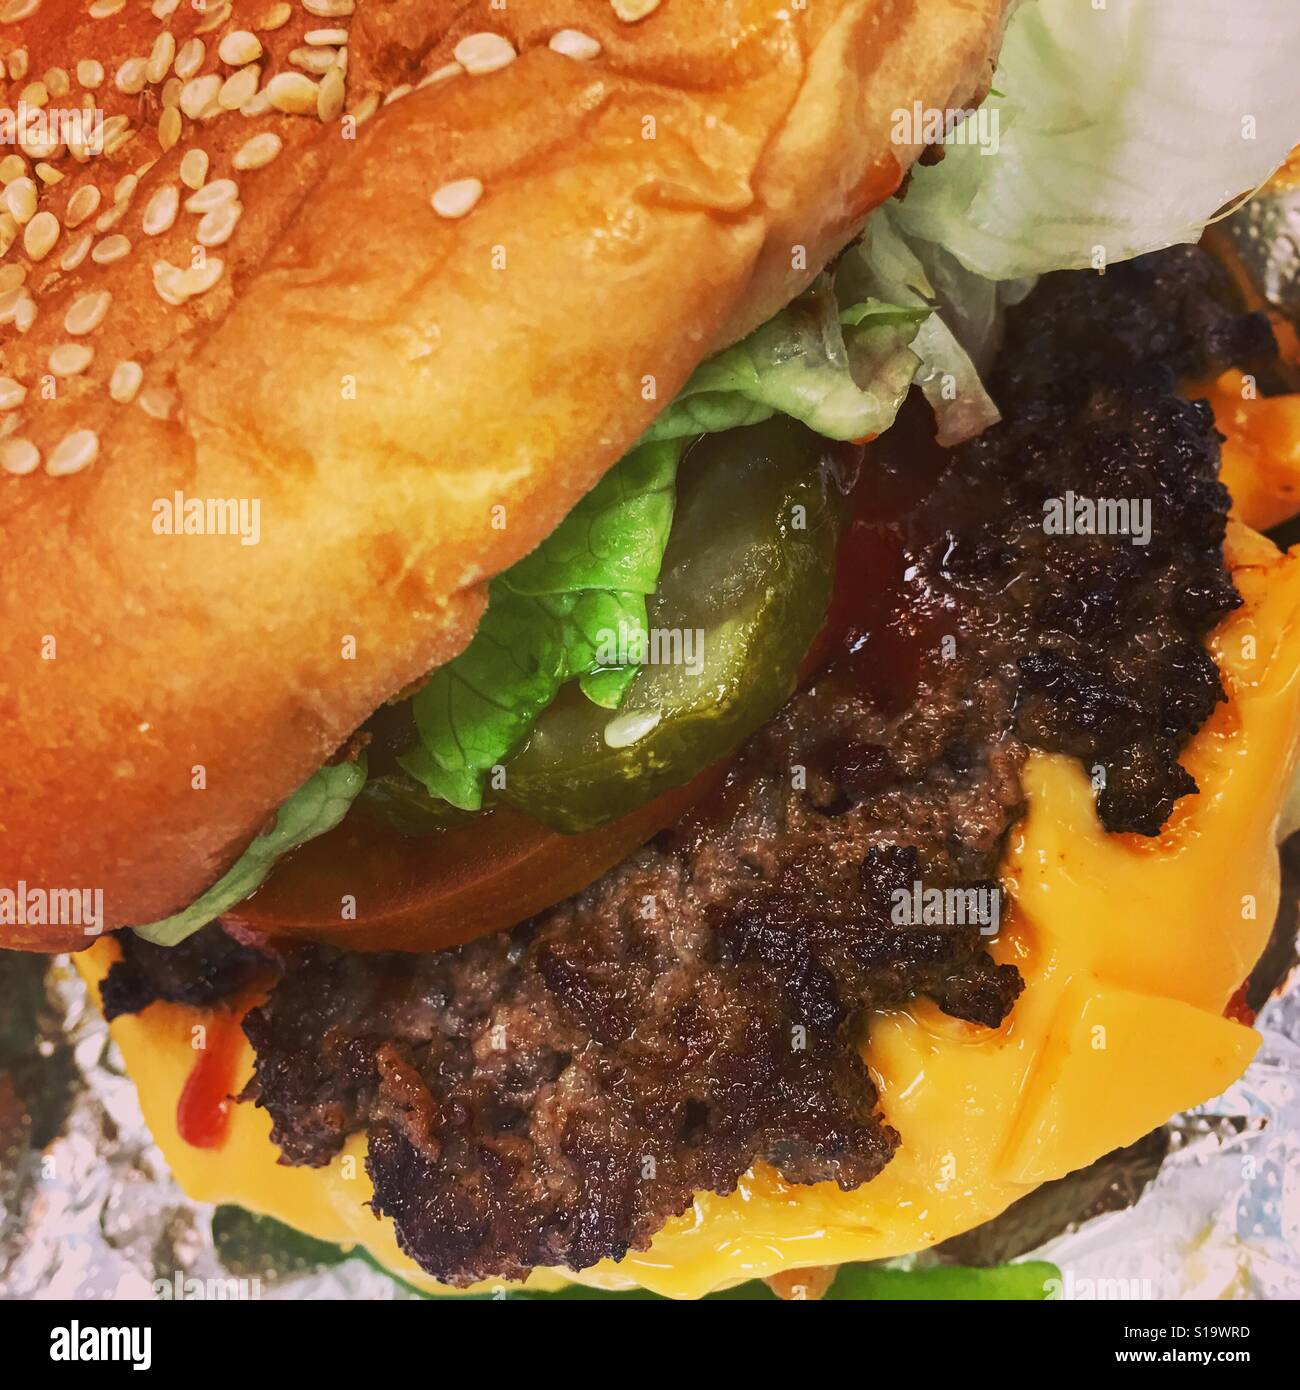 Close-up of a Cheeseburger. Stock Photo